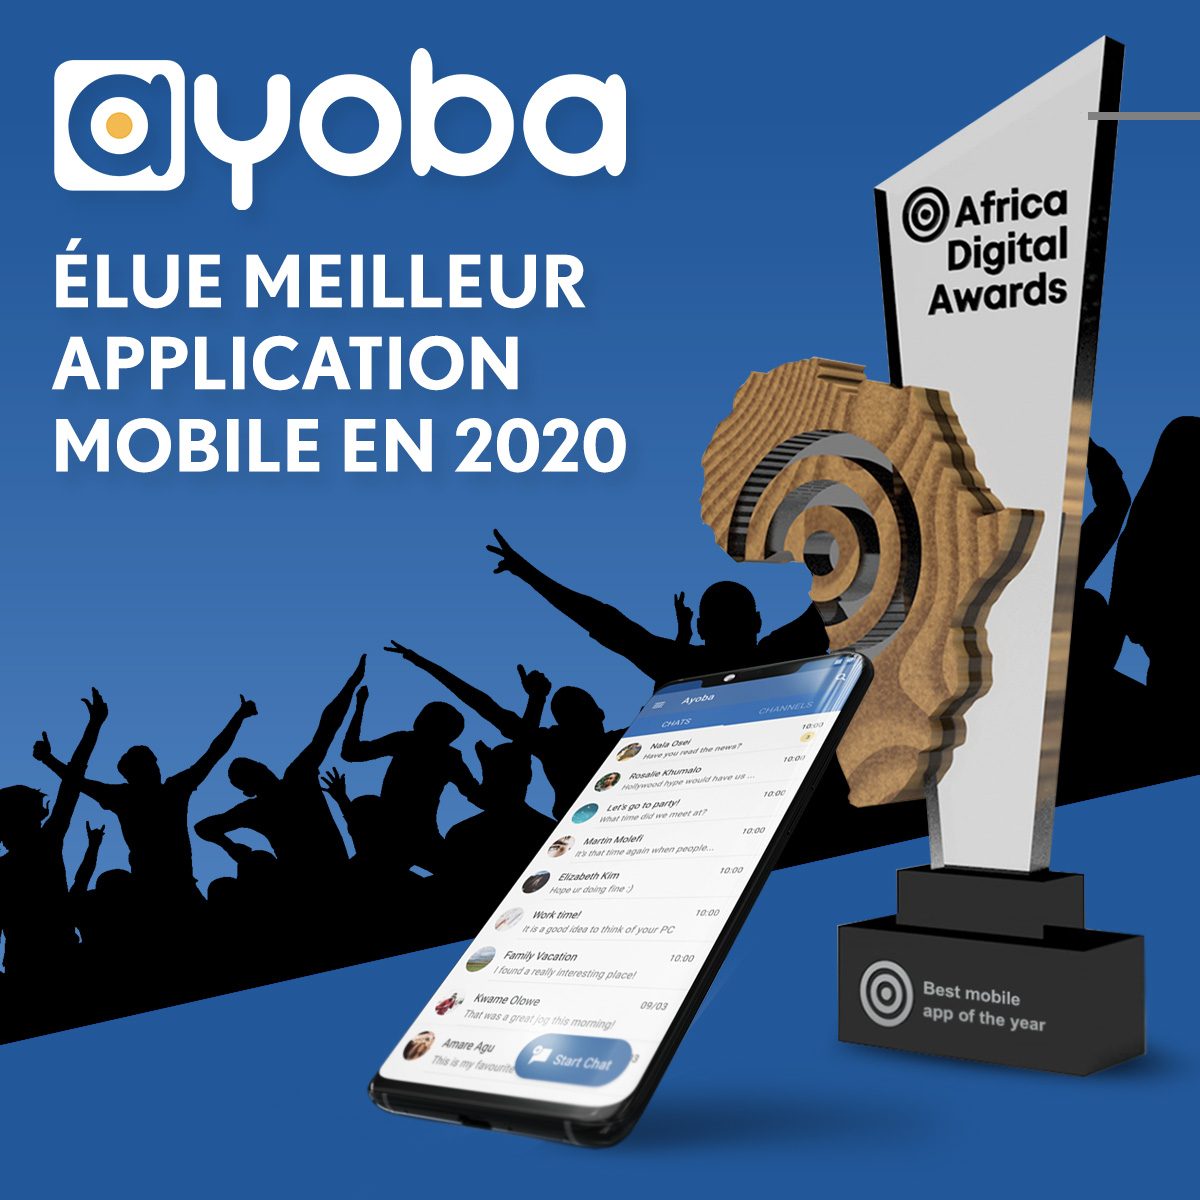 Ayoba clôture 2020 en recevant le prix de la meilleure application mobile décerné au Africa Digital Award